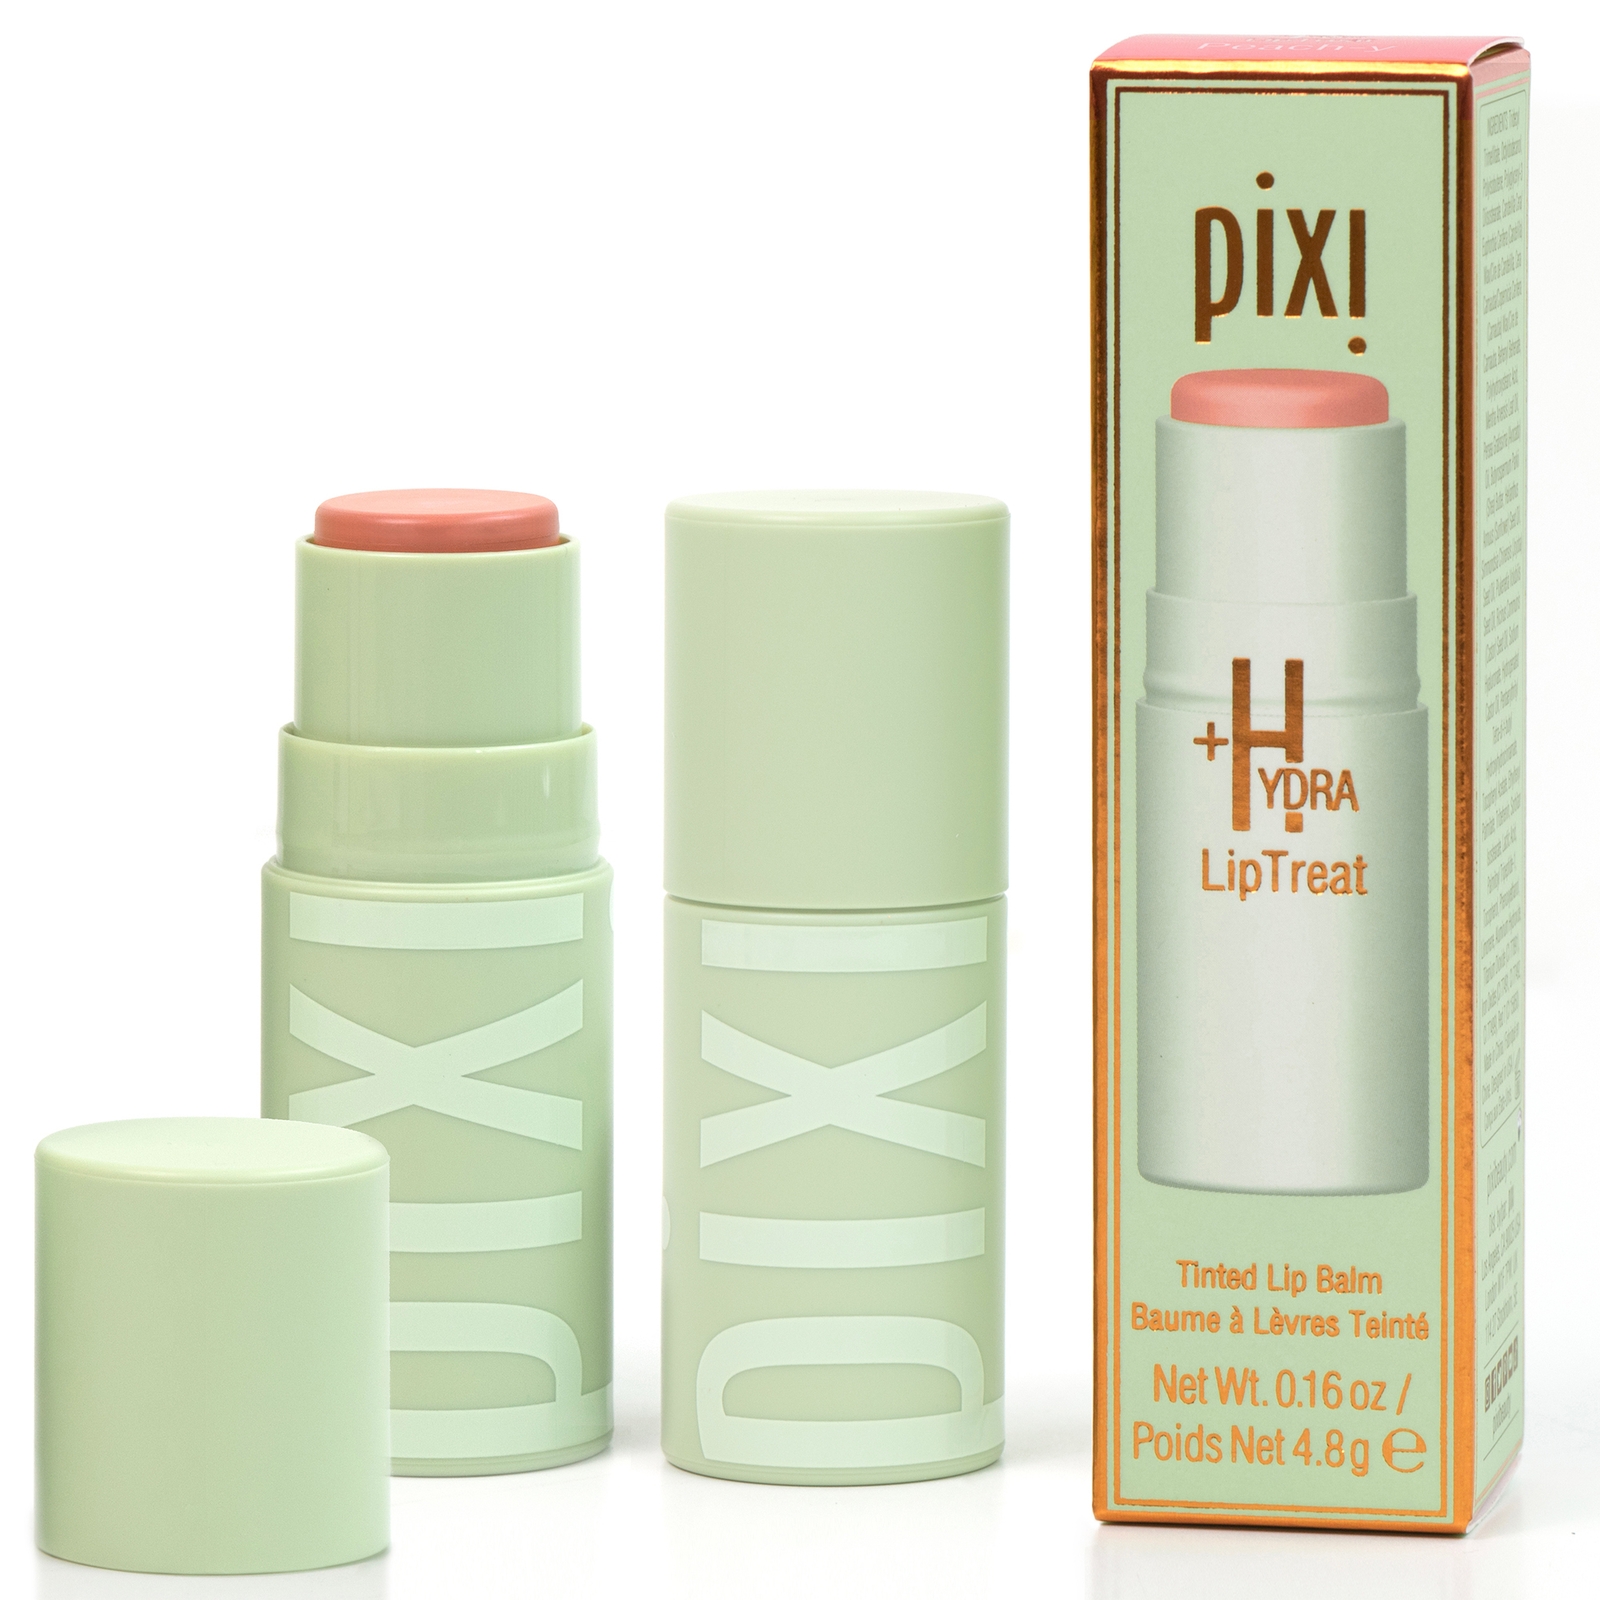 PIXI +Hydra LipTreat Balm 4.8g (Various Shades) - Peach-y